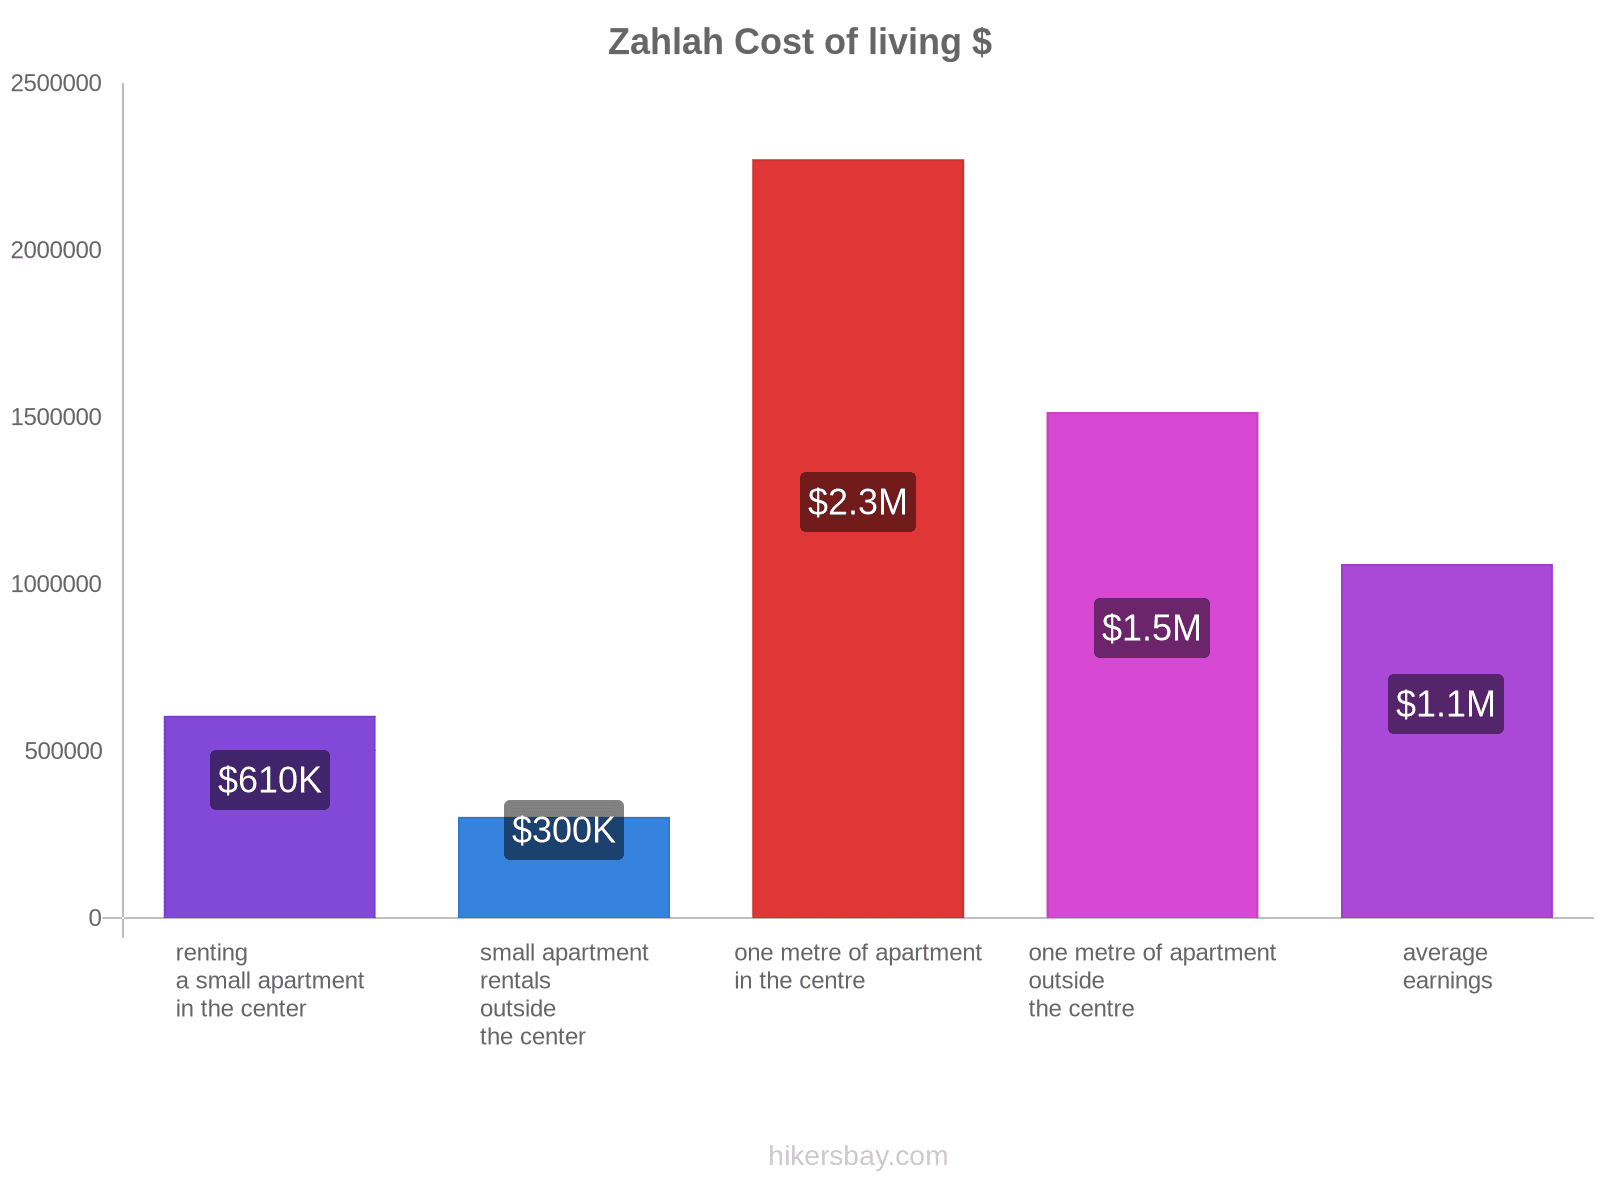 Zahlah cost of living hikersbay.com